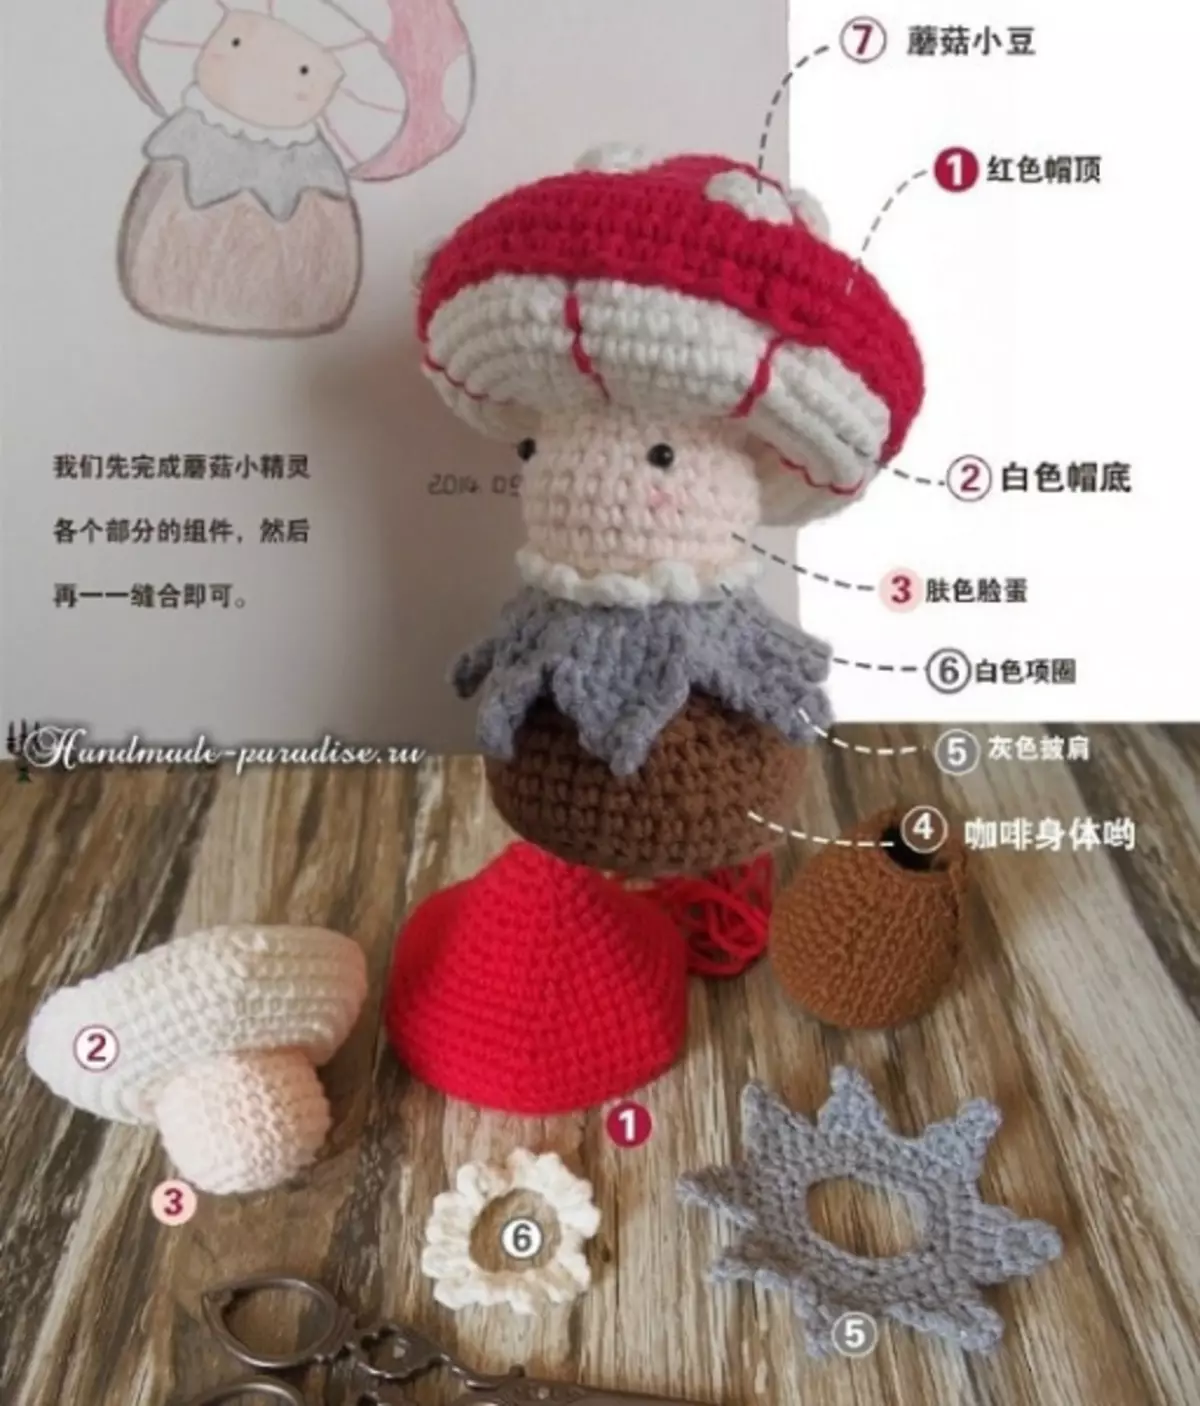 Козу карын козу карын. Knit crochet amigurumi